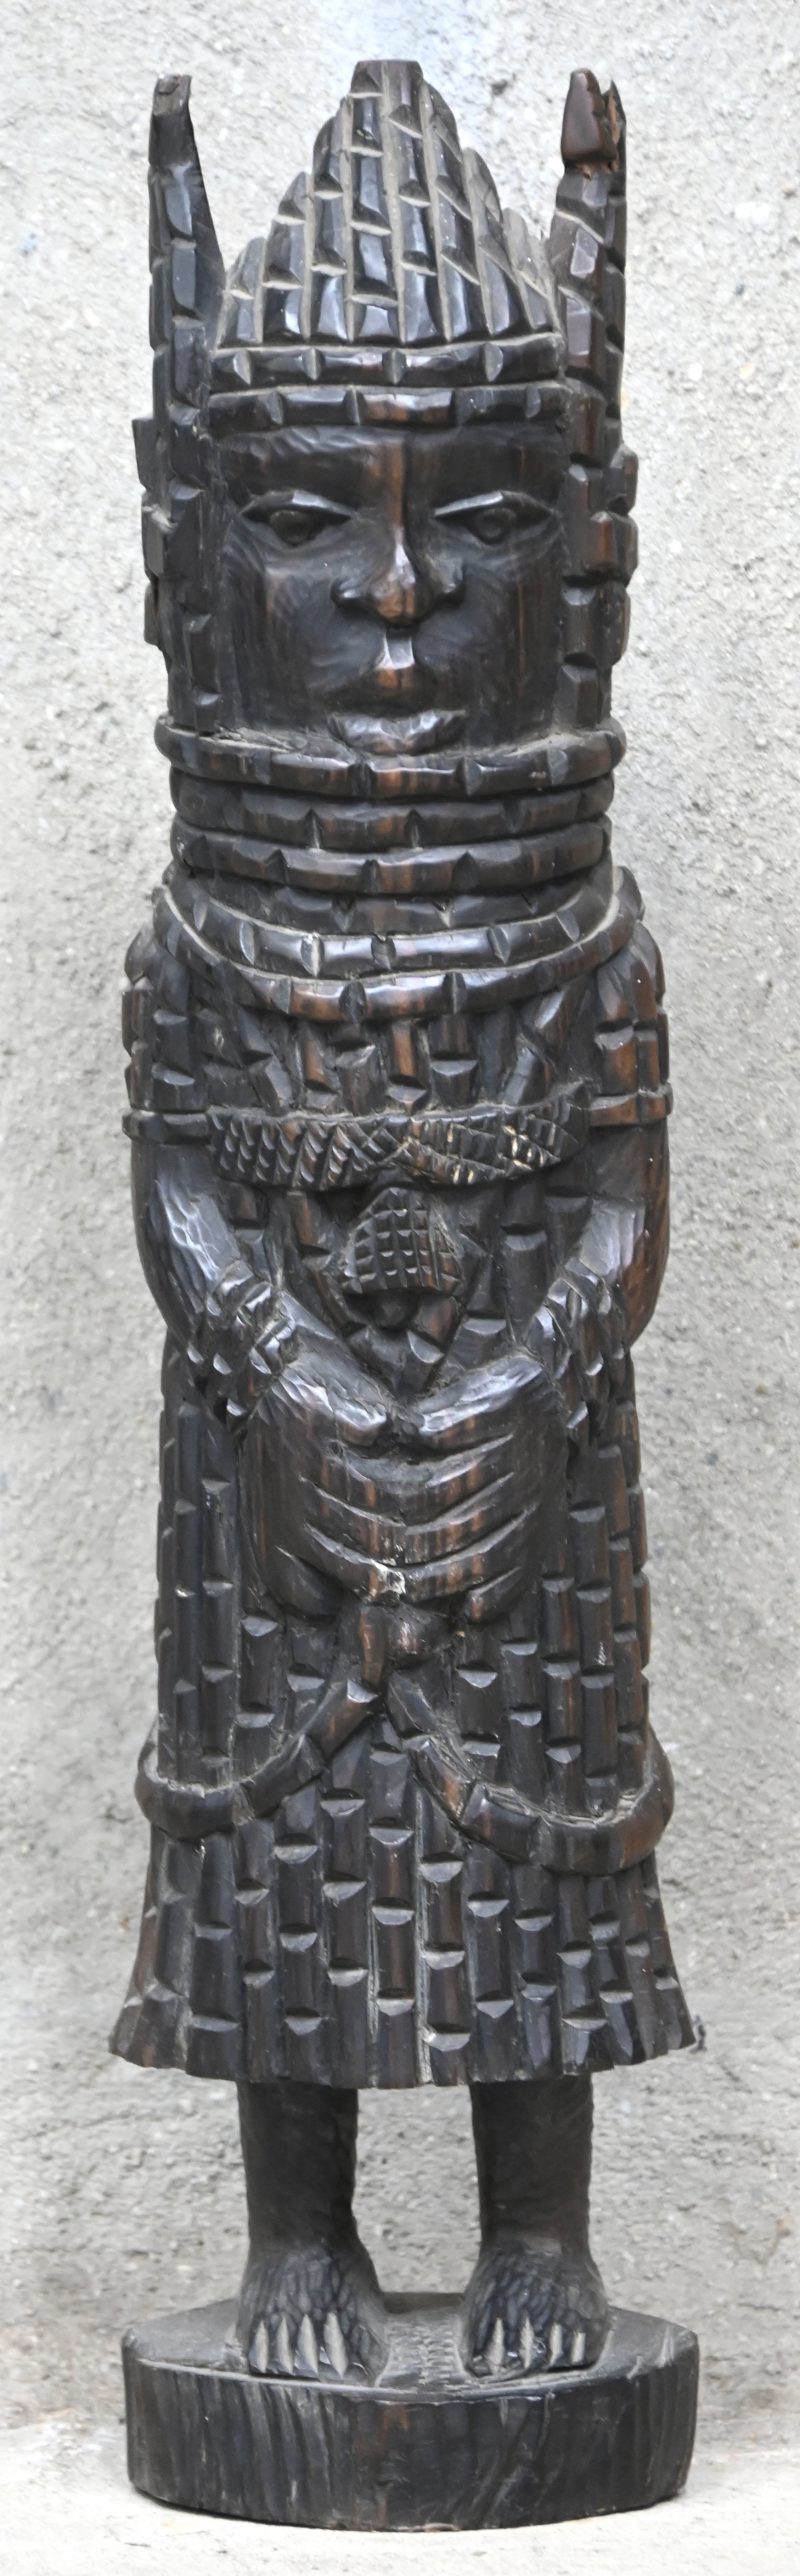 Een houten beeld naar de voorbeelden van de Obabeelden uit Benin.